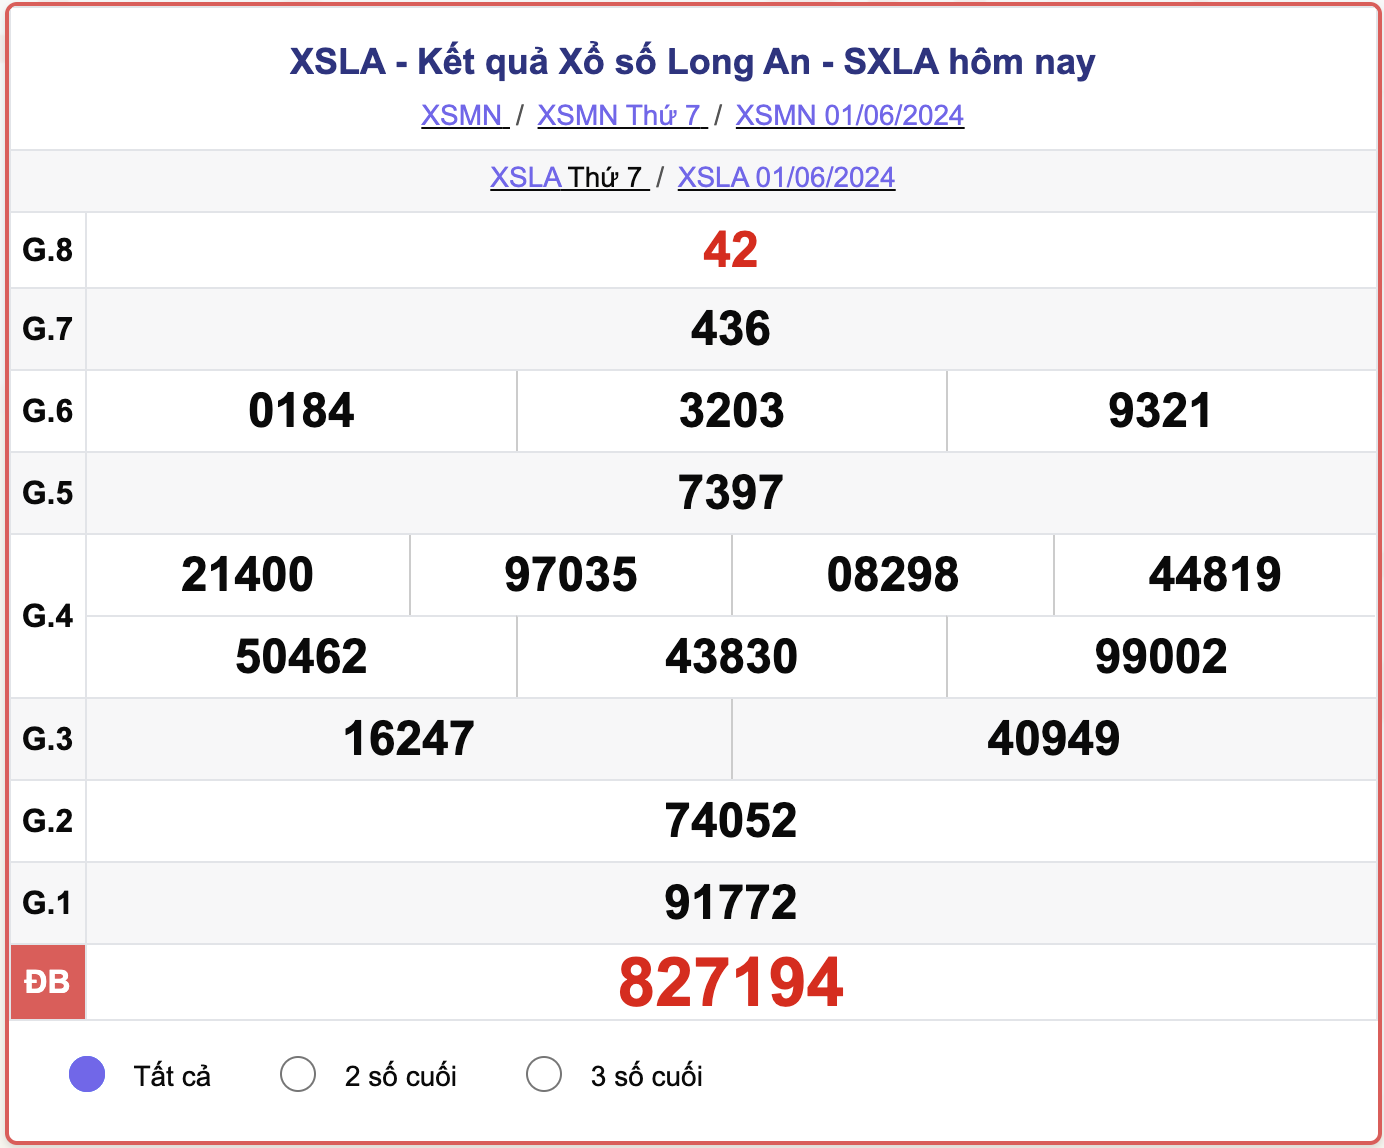 XSLA thứ 7, kết quả xổ số Long An ngày 1/6/2024.